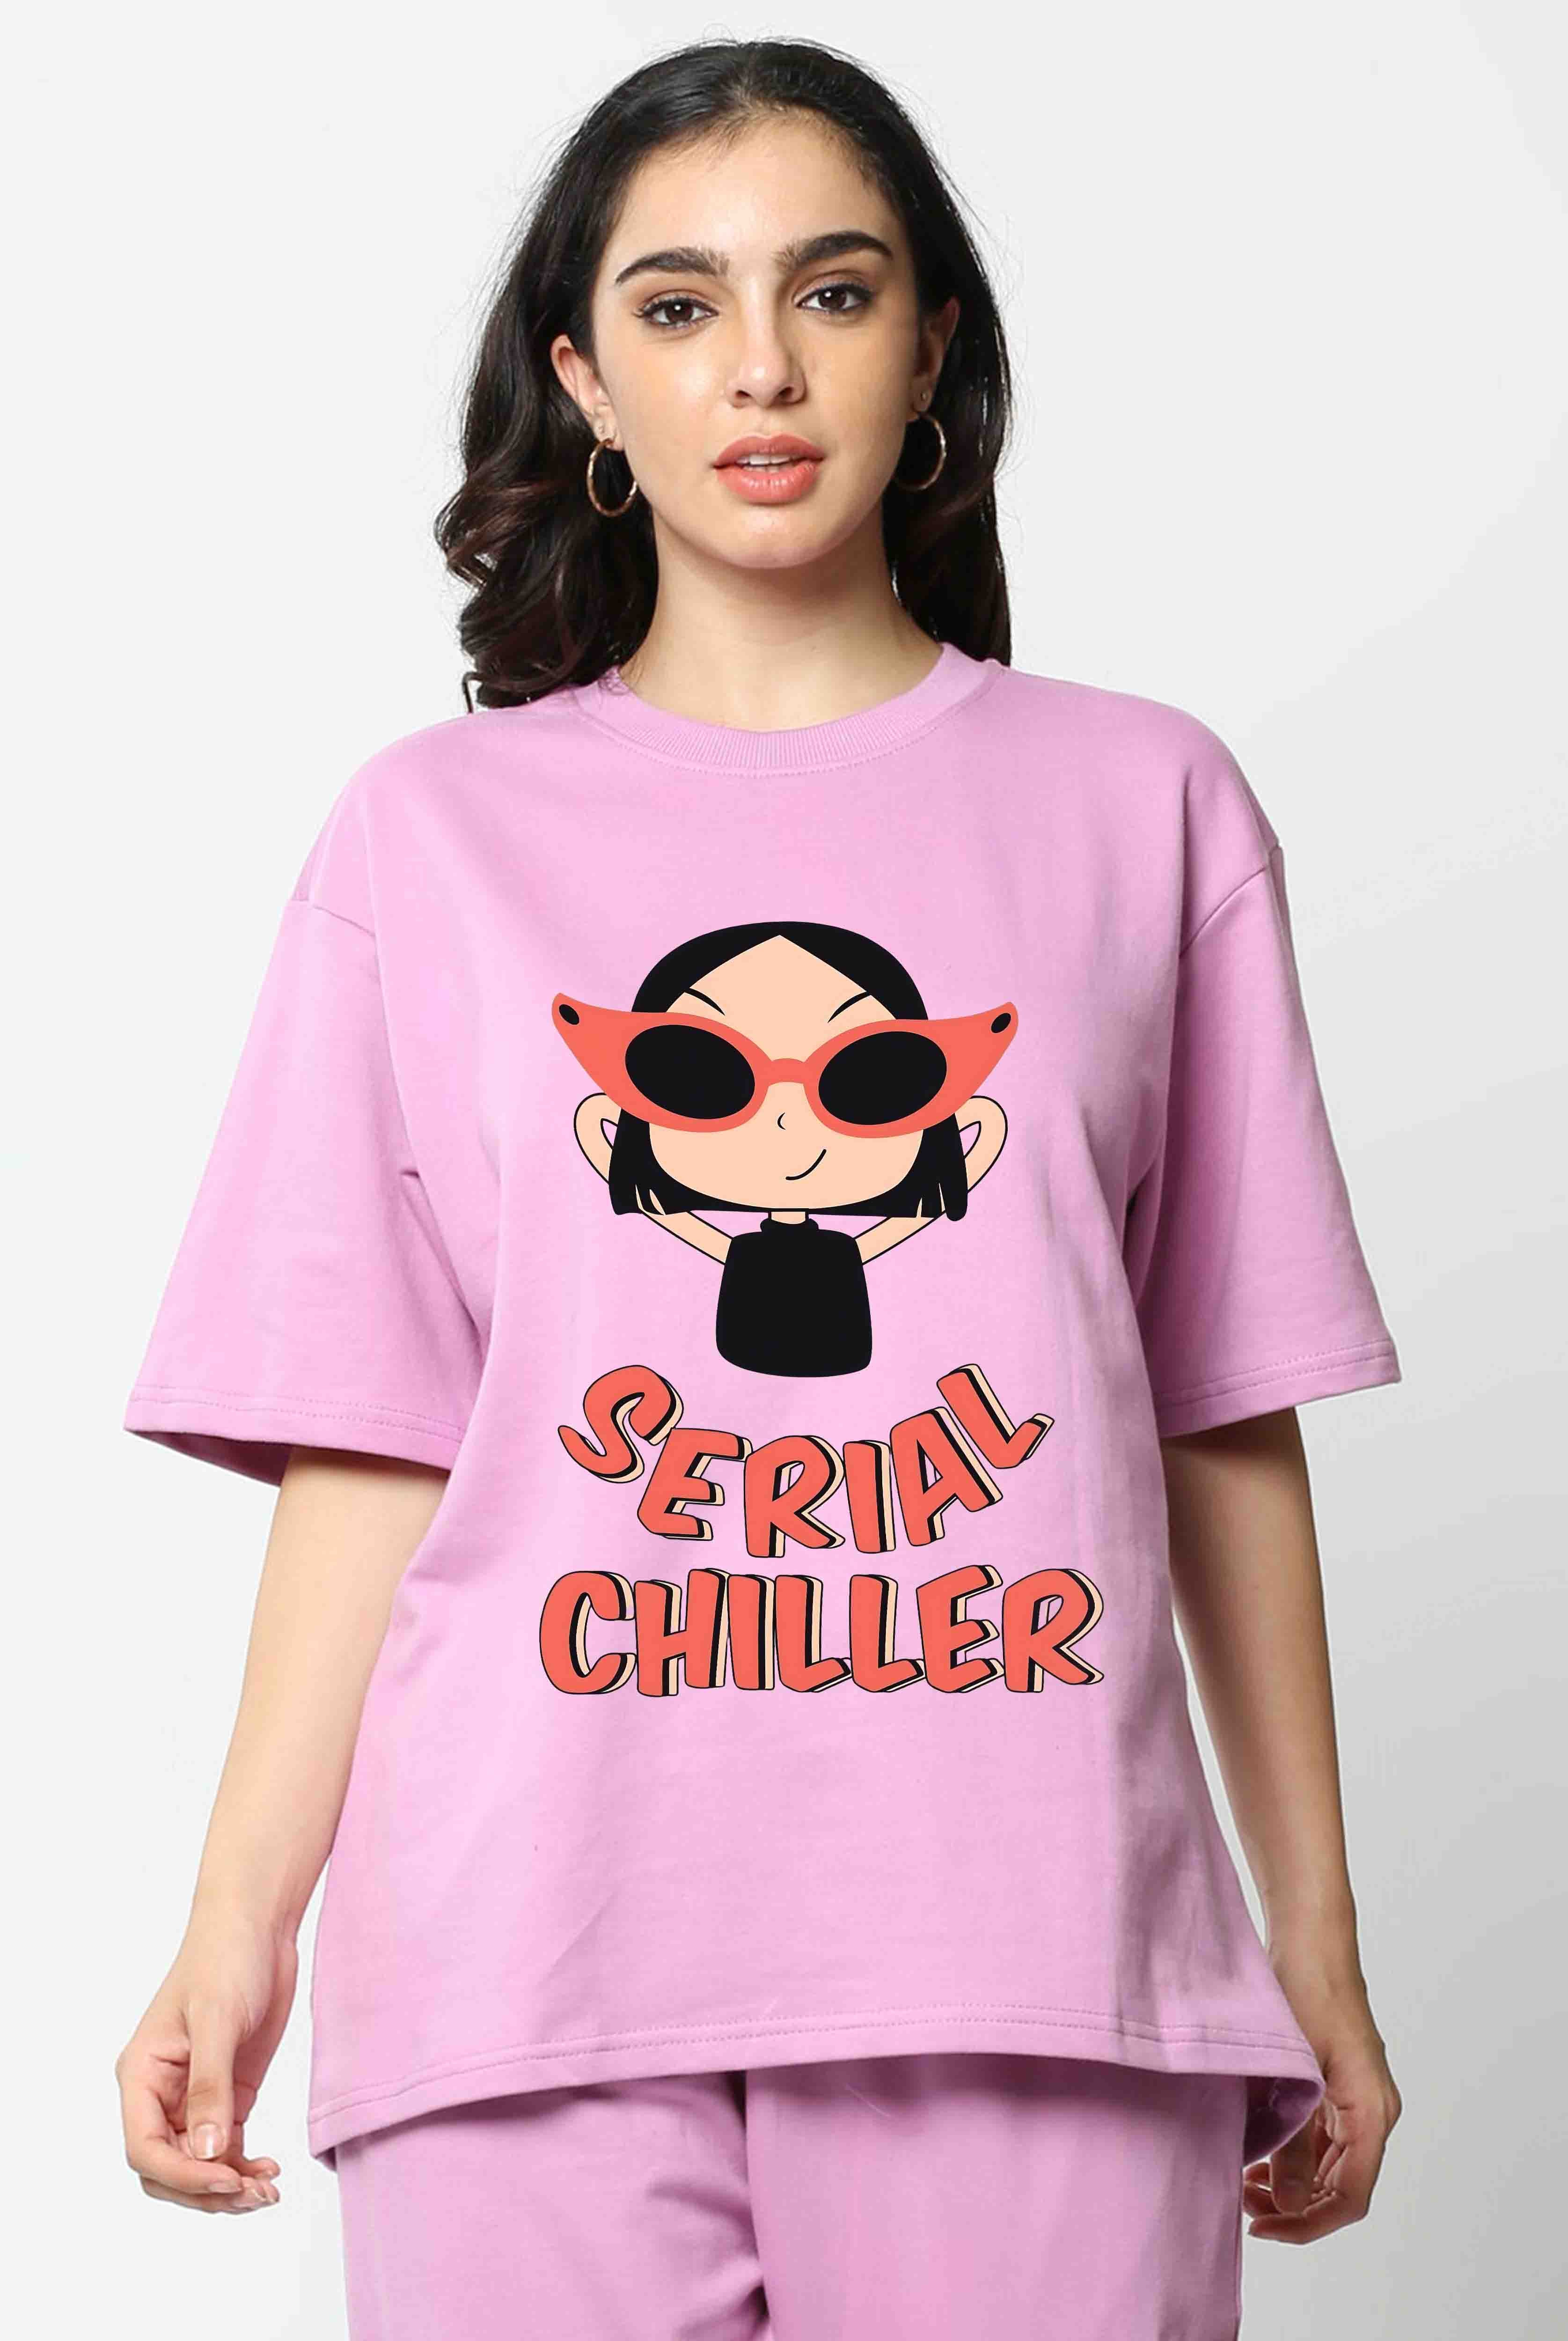 Serial Chiller 2 Women's Oversized T-Shirt